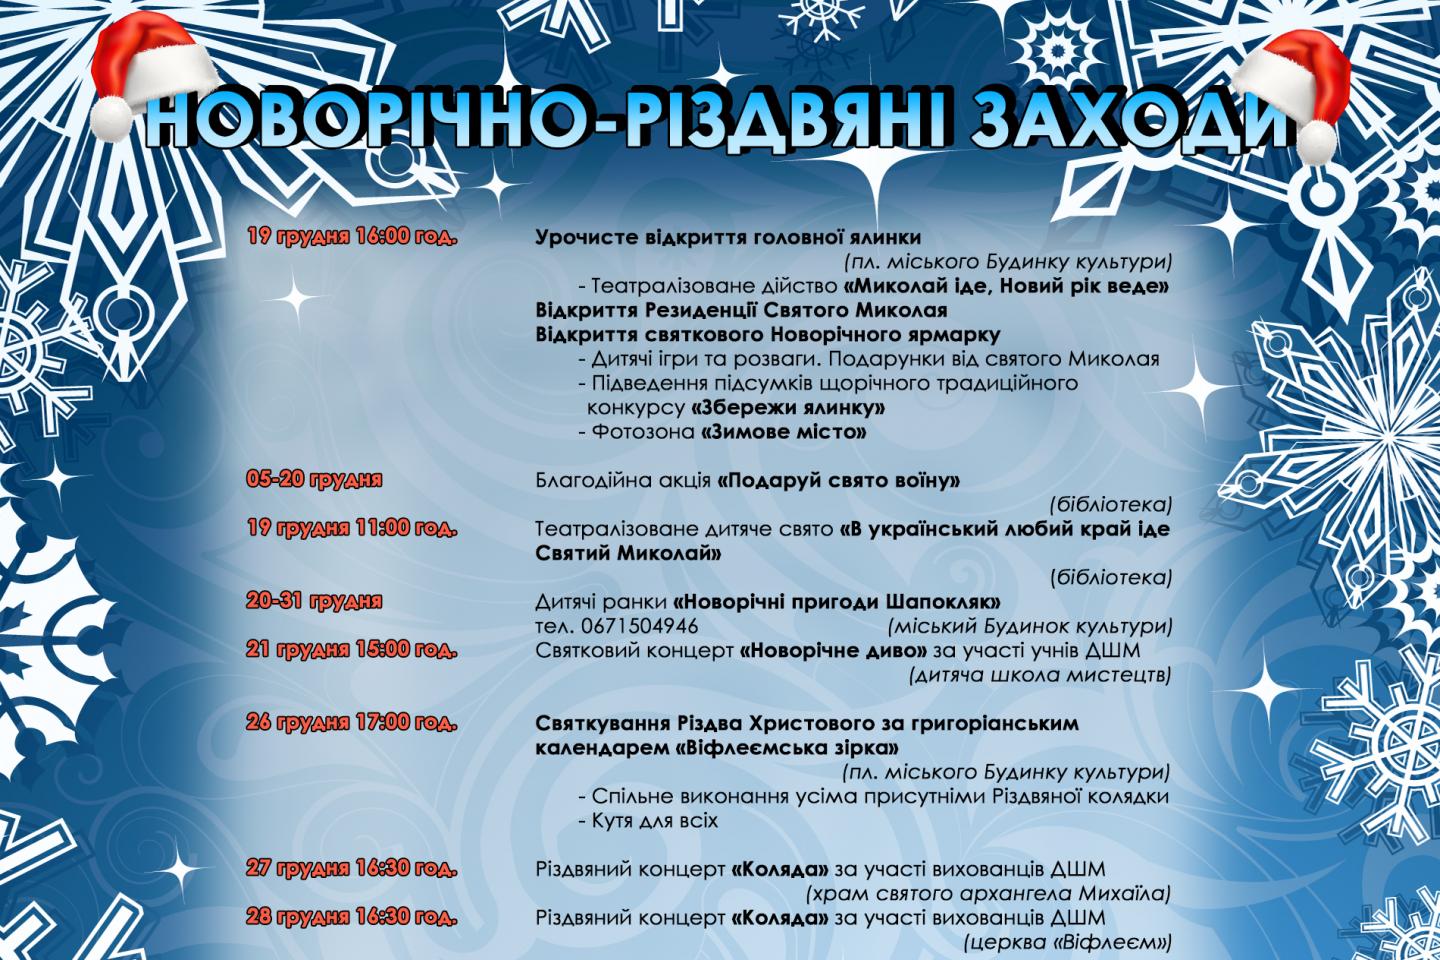 http://dunrada.gov.ua/uploadfile/archive_news/2019/12/18/2019-12-18_7279/images/images-83048.jpg